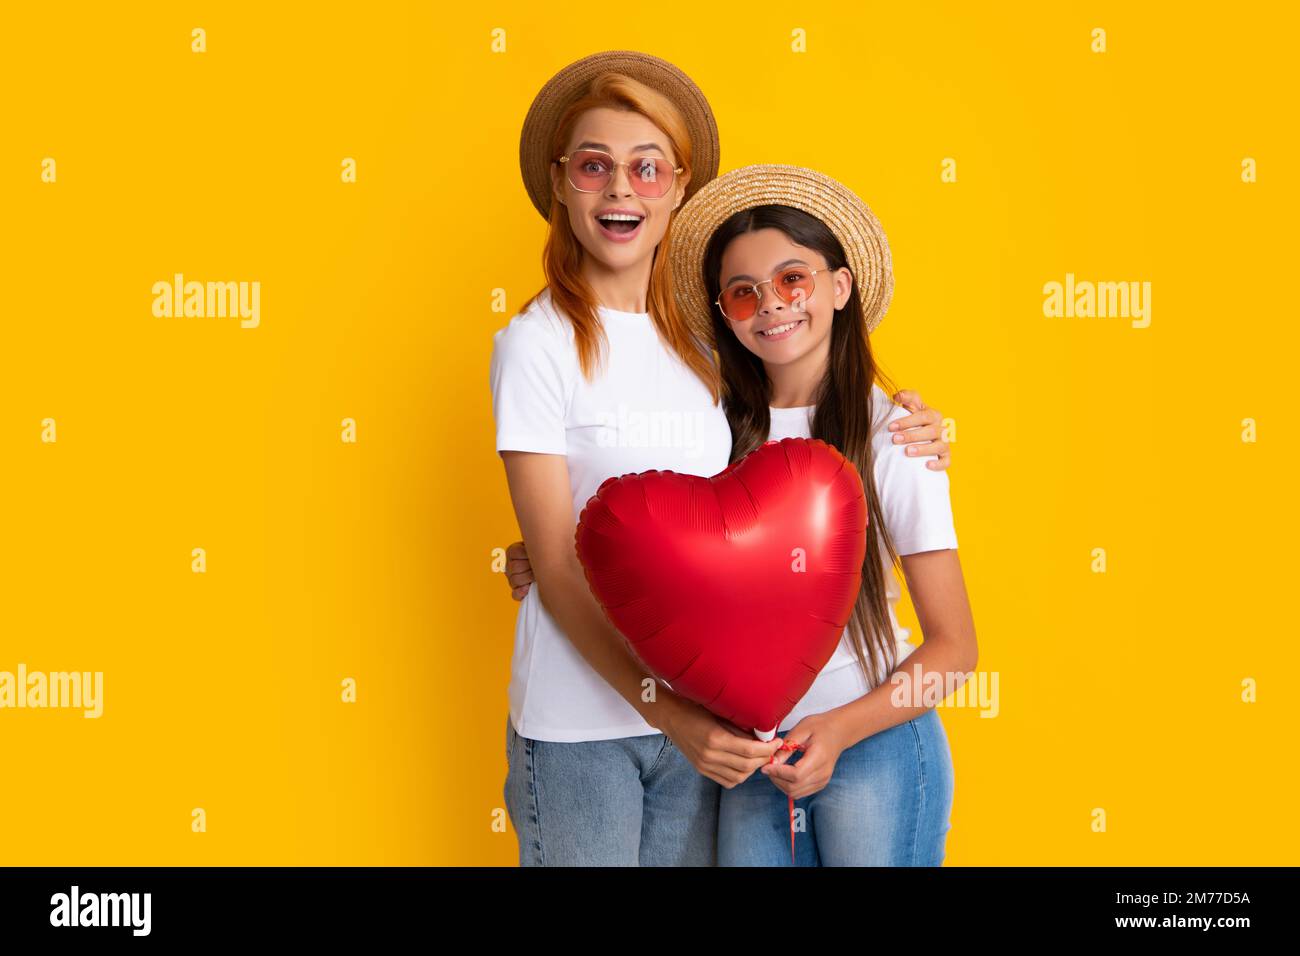 Ich liebe mom. Mutter und Tochter halten einen Herzballon. Glückliche Mutter und Tochter, die einen Liebesherz-Ballon auf gelbem Hintergrund halten. Stockfoto